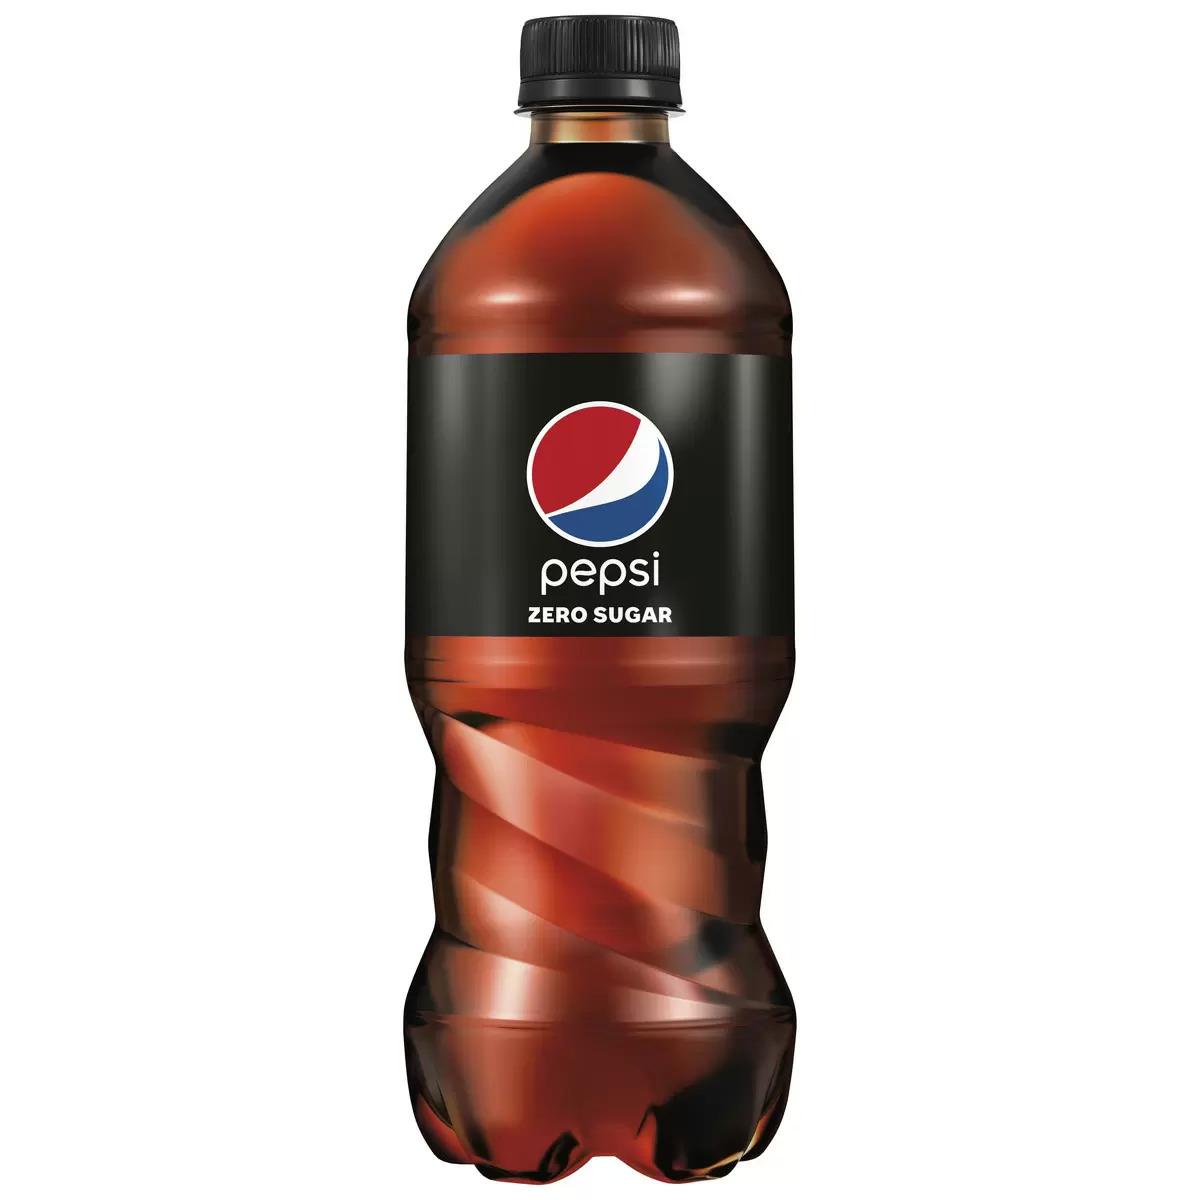 Free Pepsi Zero Sugar 20oz Bottle